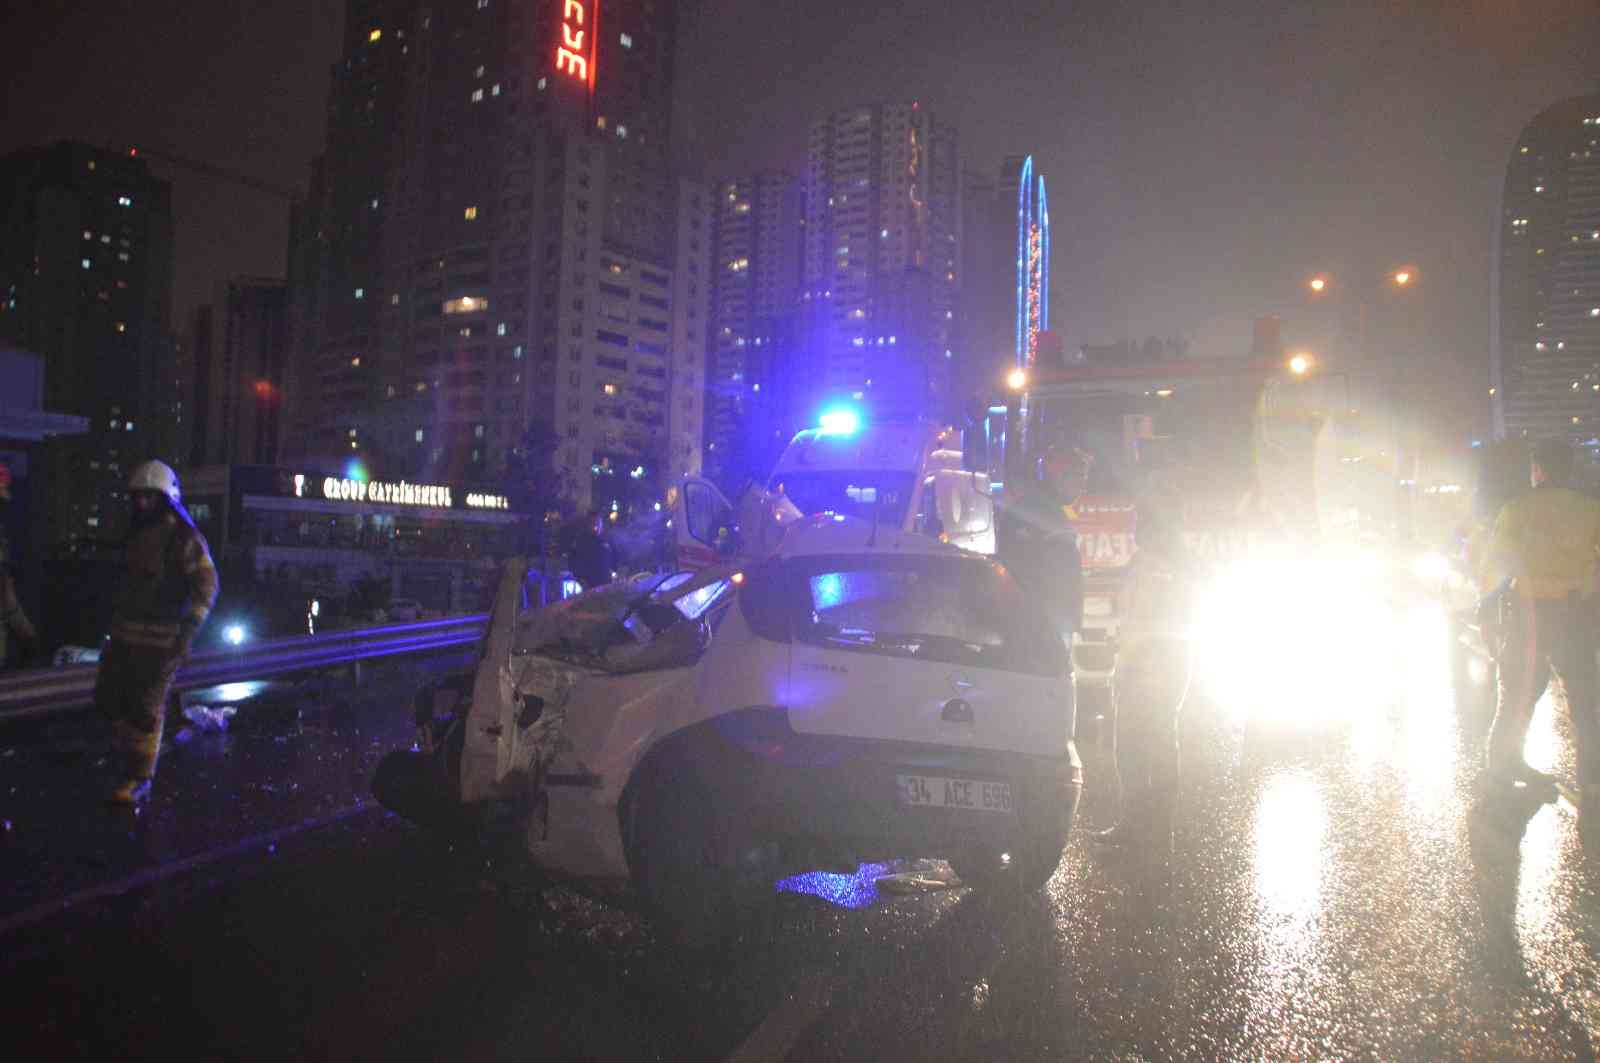 Haramidere bağlantı yolunda feci kaza: 1 ölü, 1 yaralı #istanbul